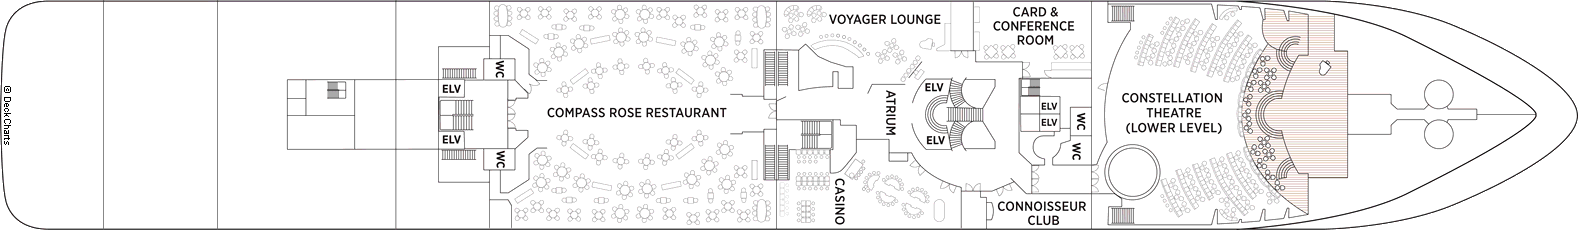 Планы палуб Seven Seas Voyager: Палуба 4